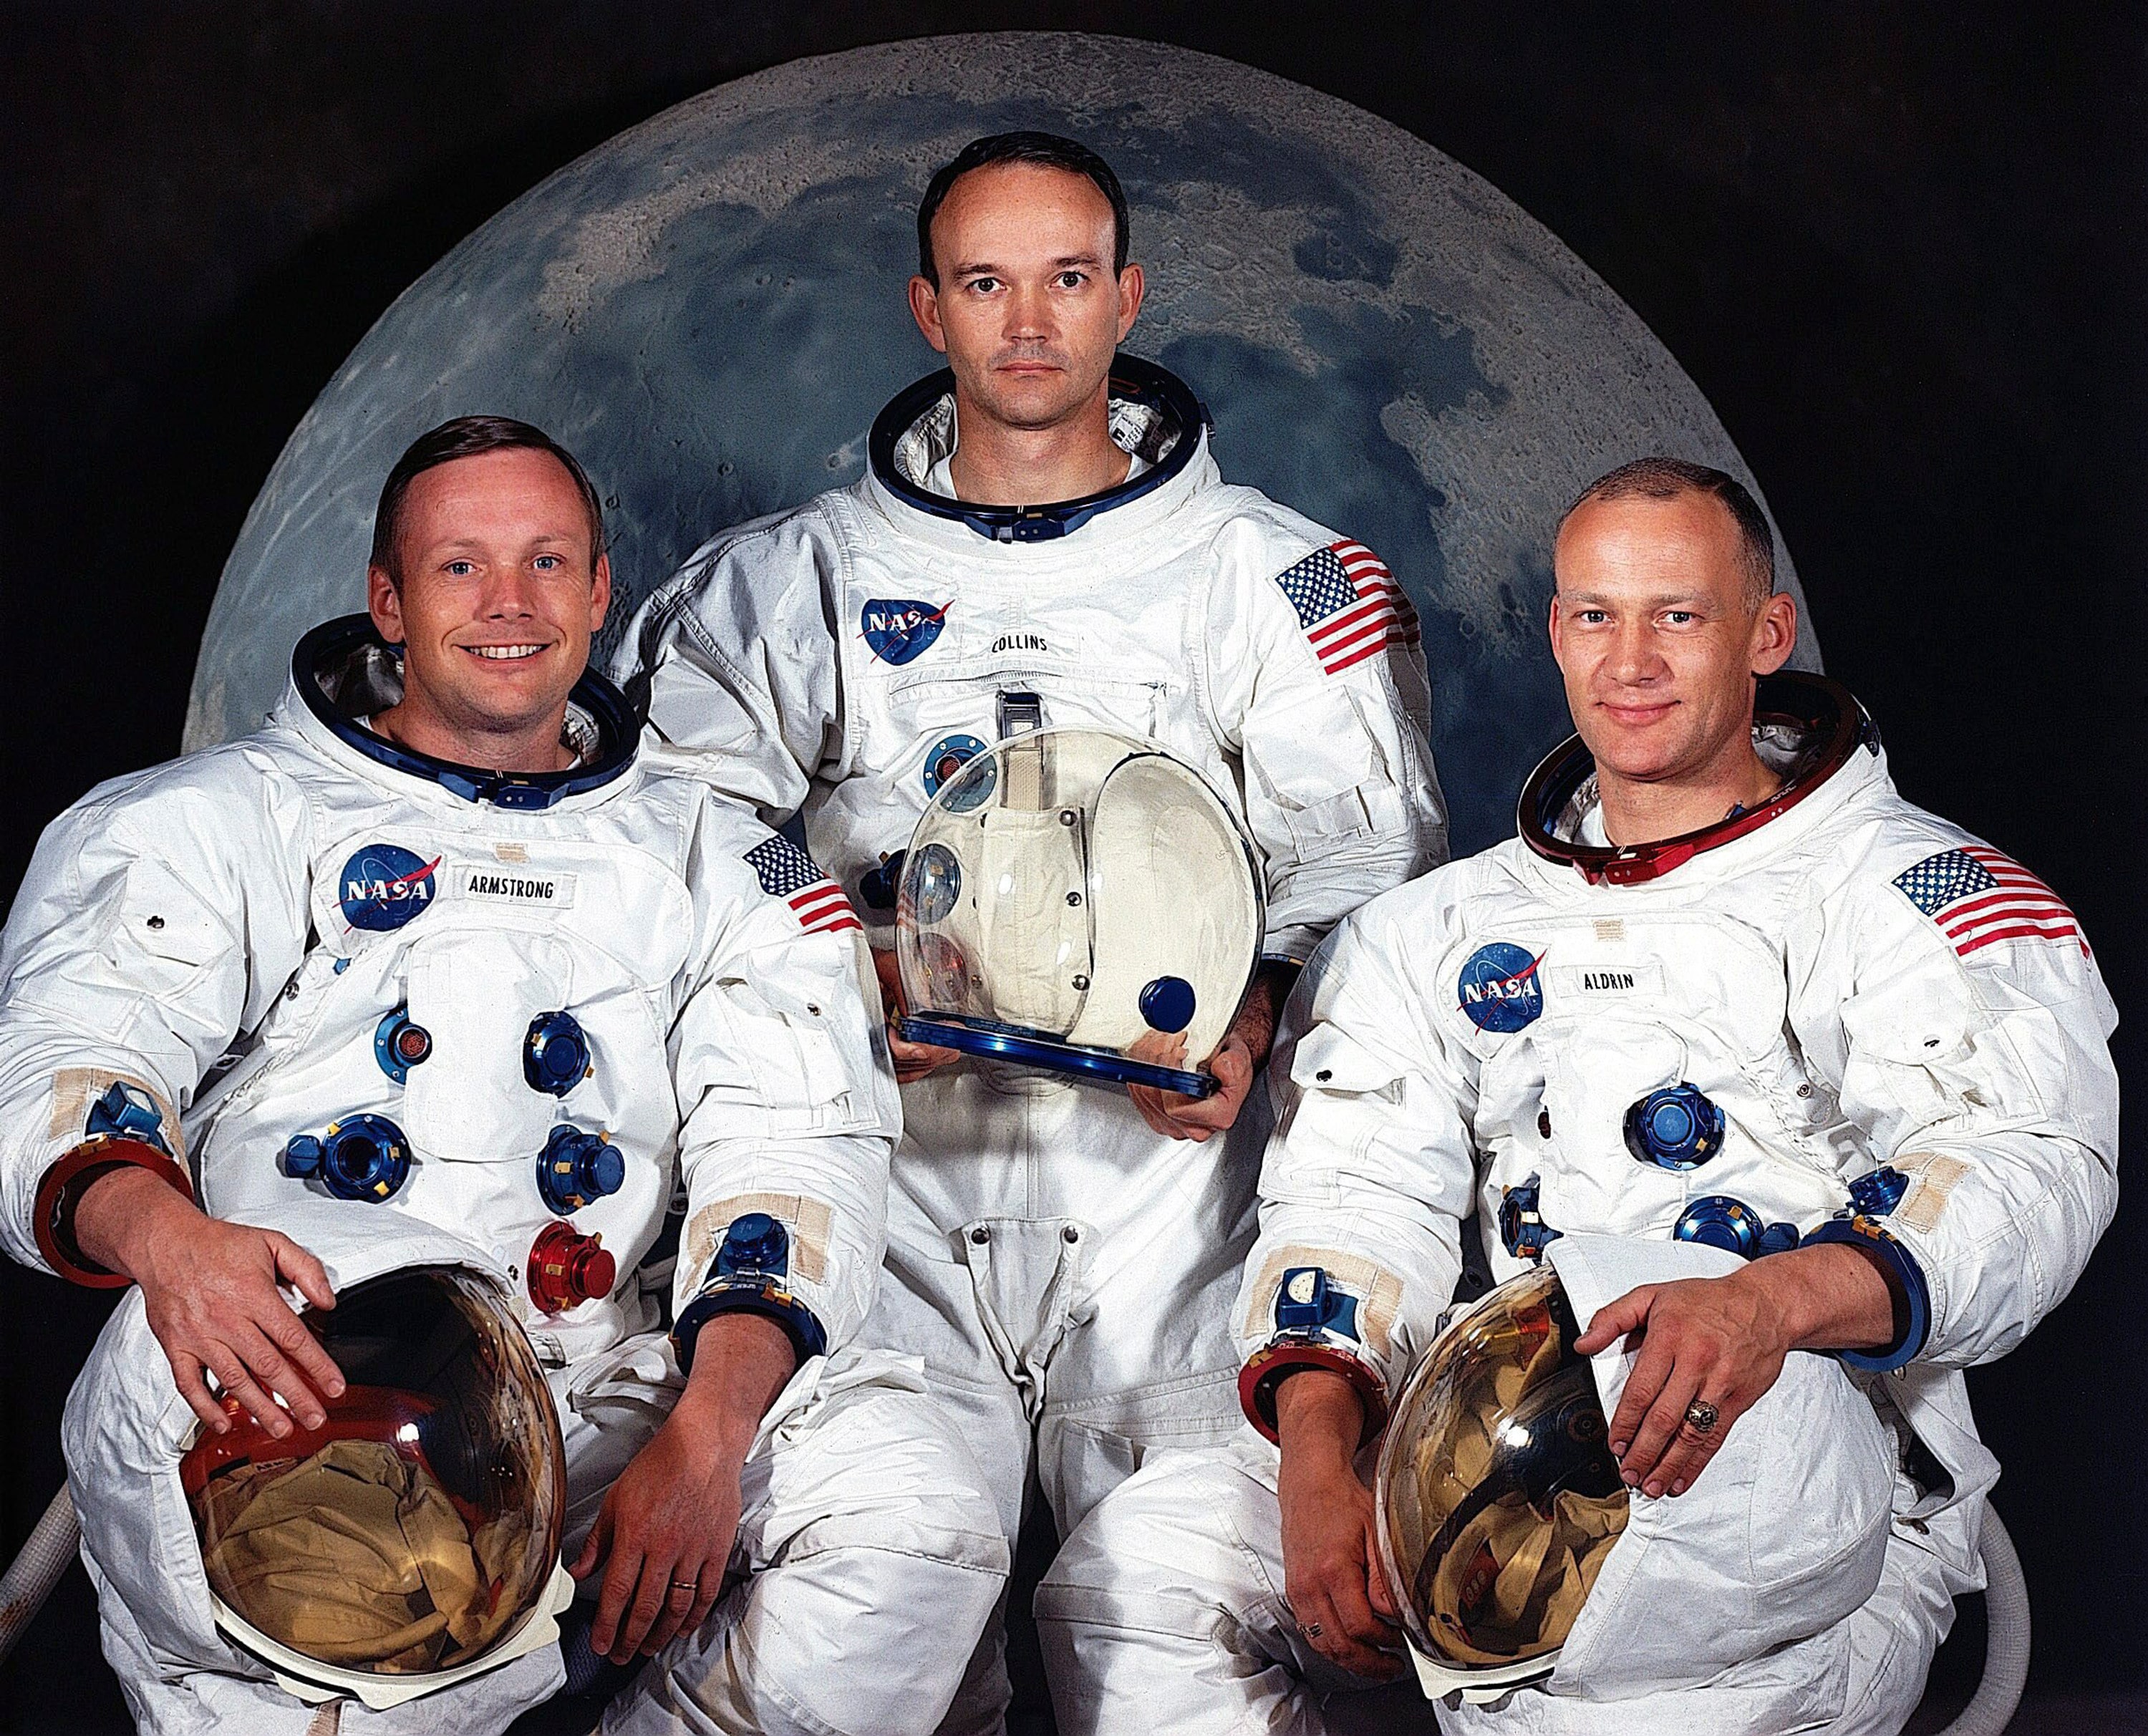 Foto ufficiale dell’equipaggio della missione Apollo 11, da sinistra: Neil Amstrong, Michael Collins e Buzz Aldrin